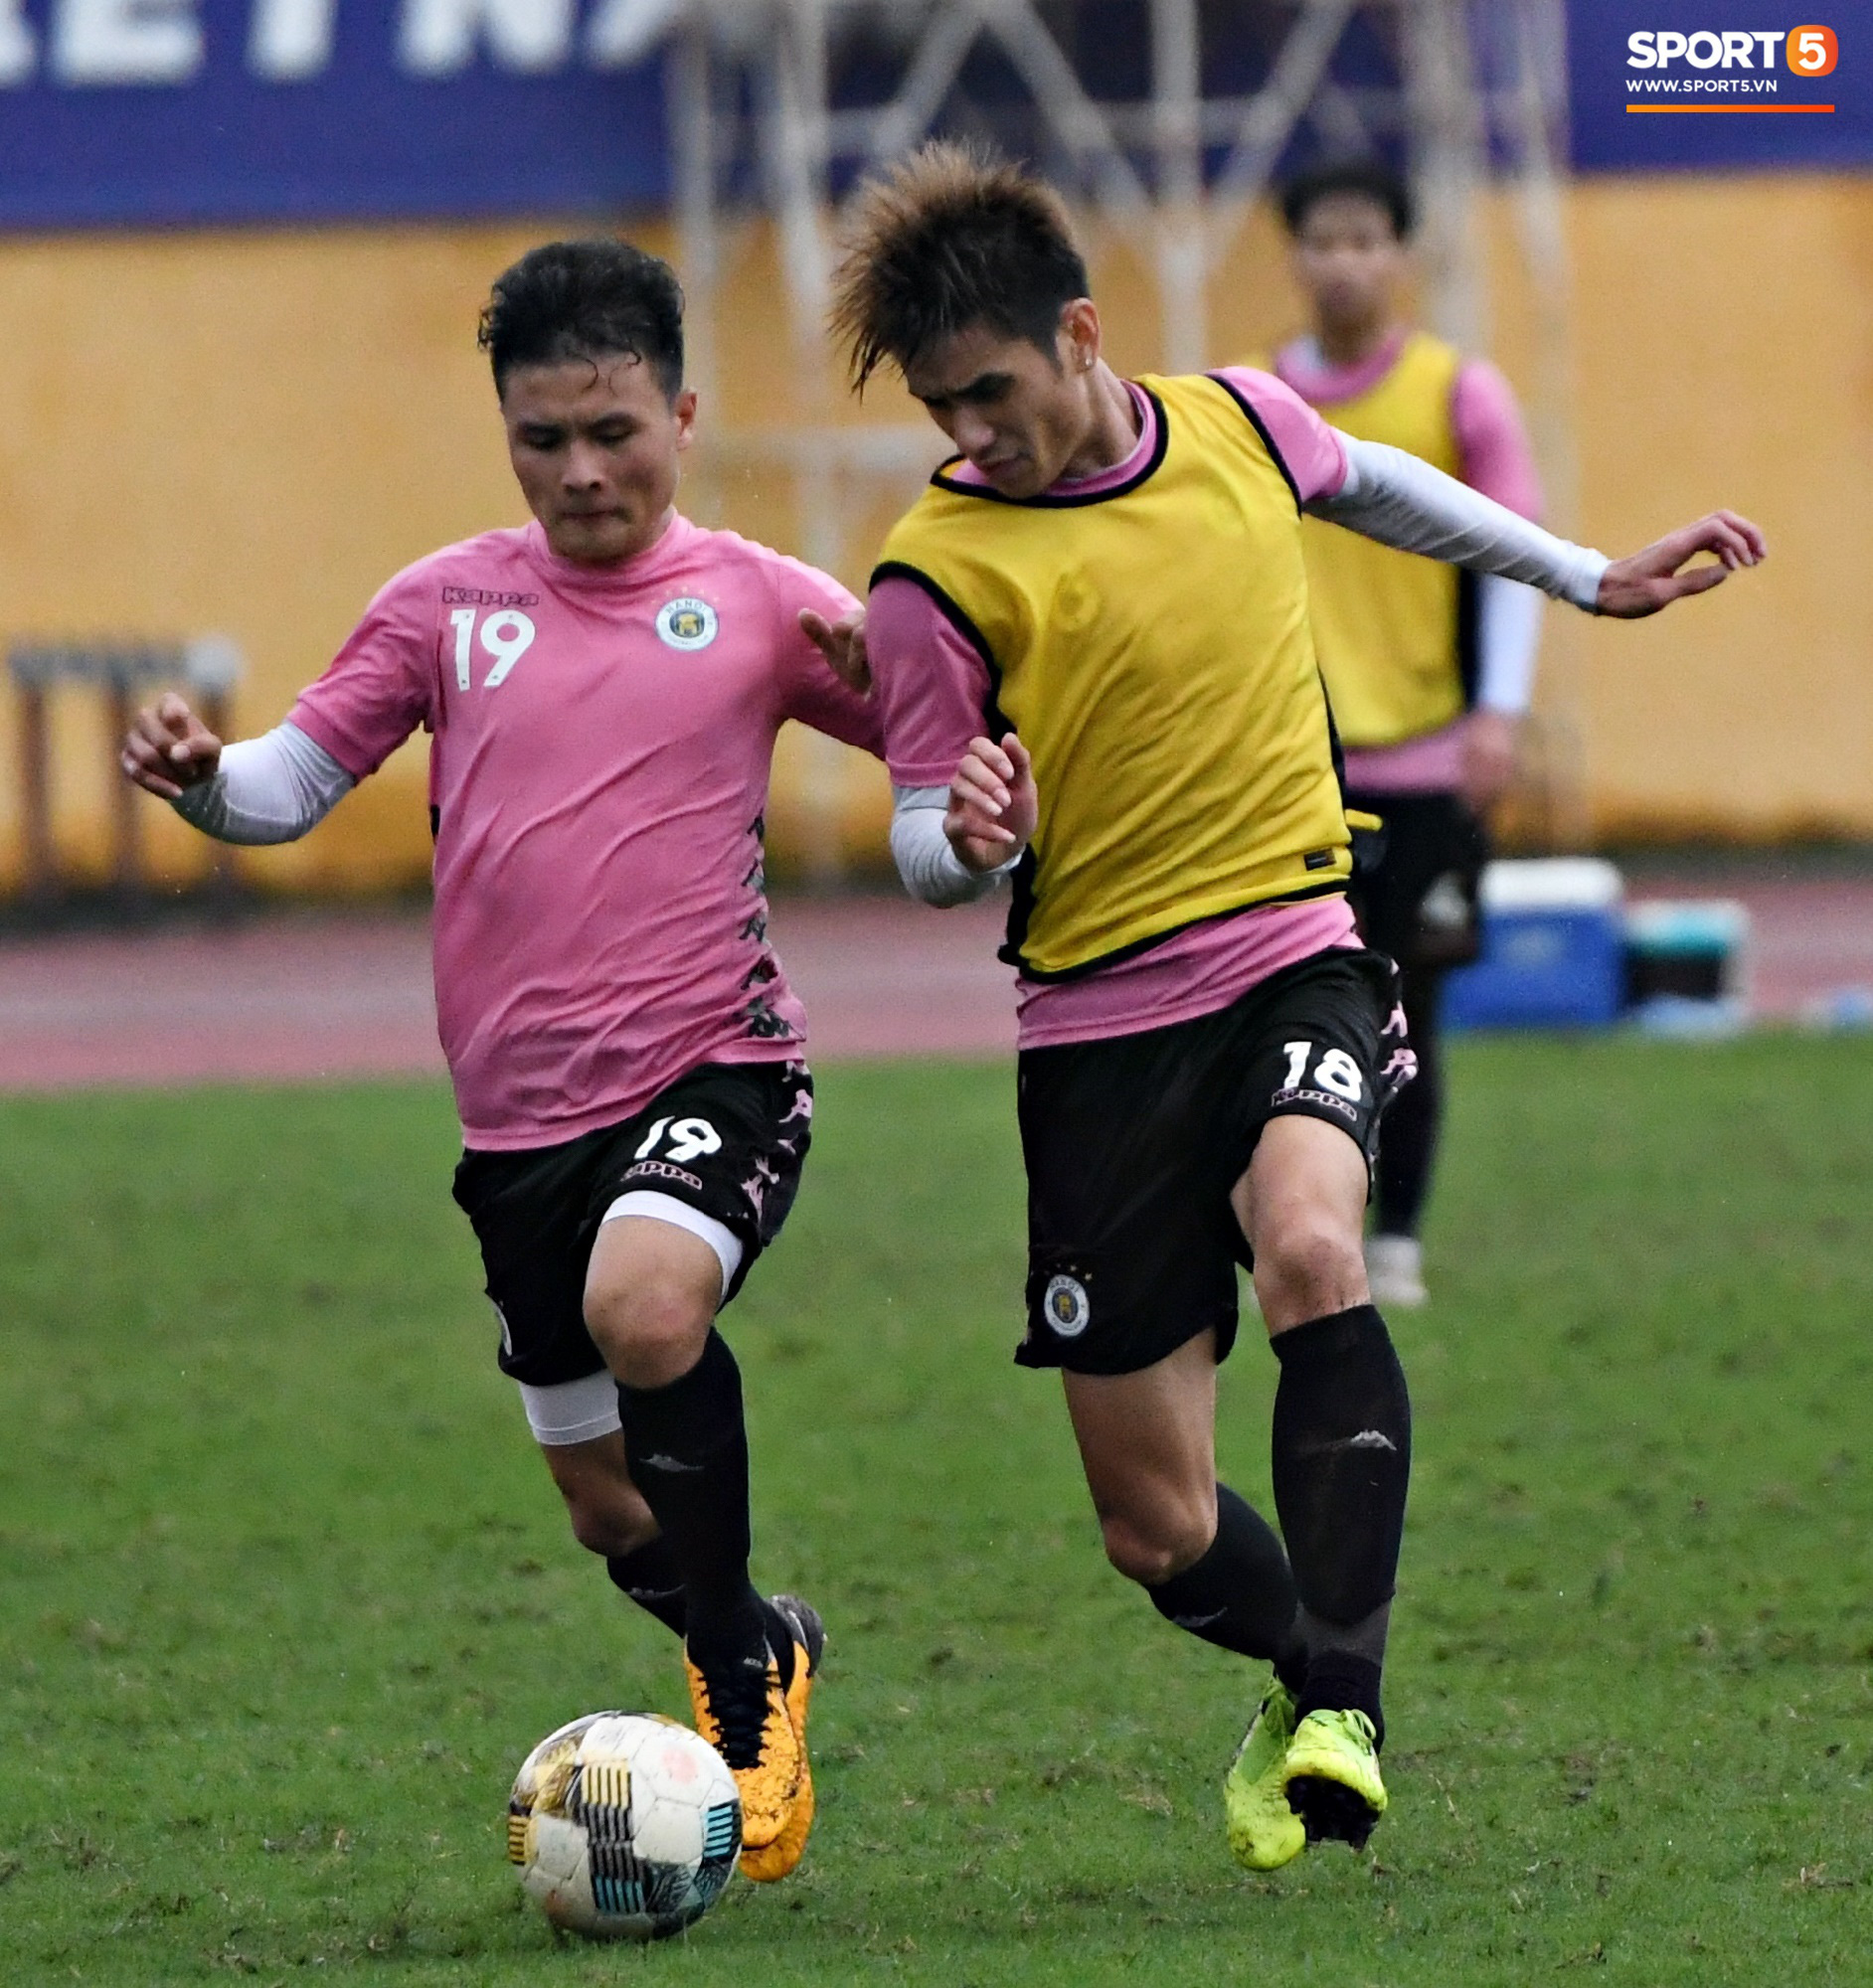 Đình Trọng đi tái khám, chắc chắn không thi đấu trận khai màn V.League 2020: CLB Hà Nội đặt niềm tin vào bộ đôi tuyển thủ U23 - Ảnh 3.